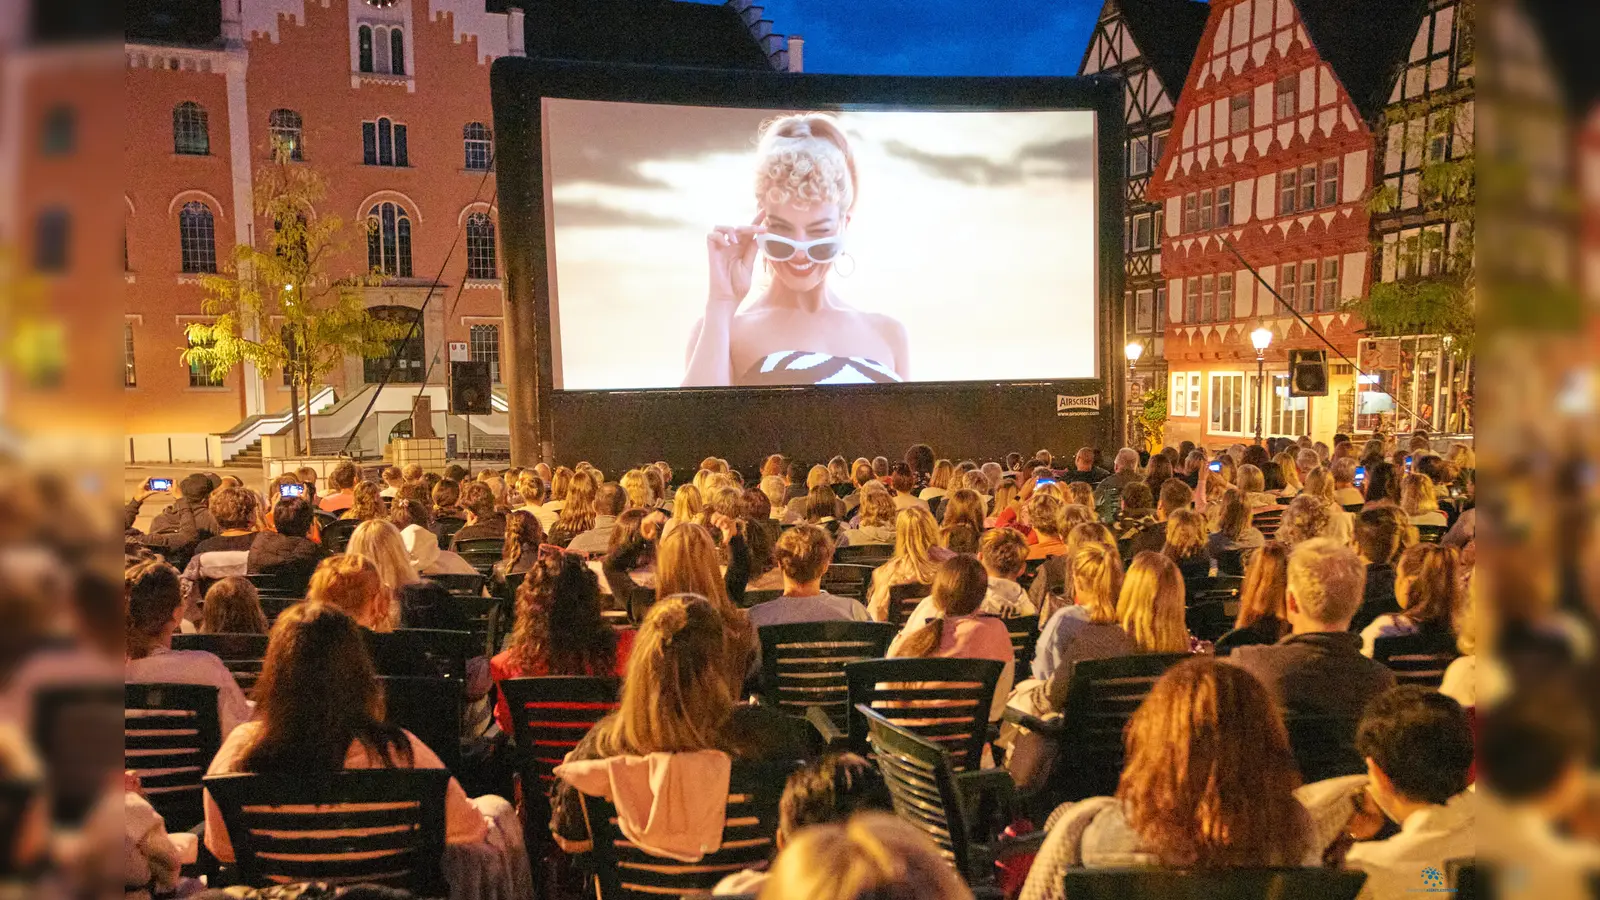 In der traumhaften Kulisse des Hofgeismarer Marktplatzes konnten am Samstag rund 250 Zuschauerrinnen und Zuschauer einen schönen Open-Air Kinoabend genießen. (Foto: Stefan Bönning)